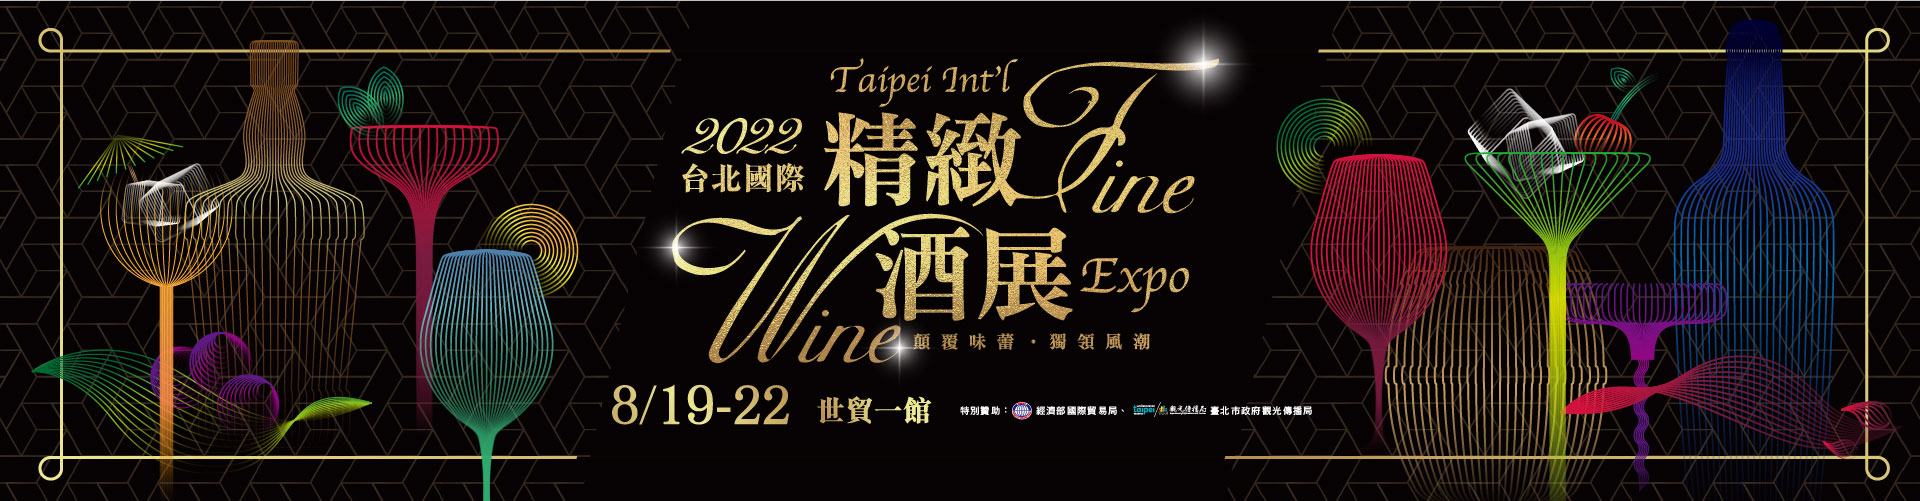 < 대만 국제 와인 엑스포의 홍보 이미지 - 출처: 대만 국제 와인 엑스포 공식 홈페이지 >